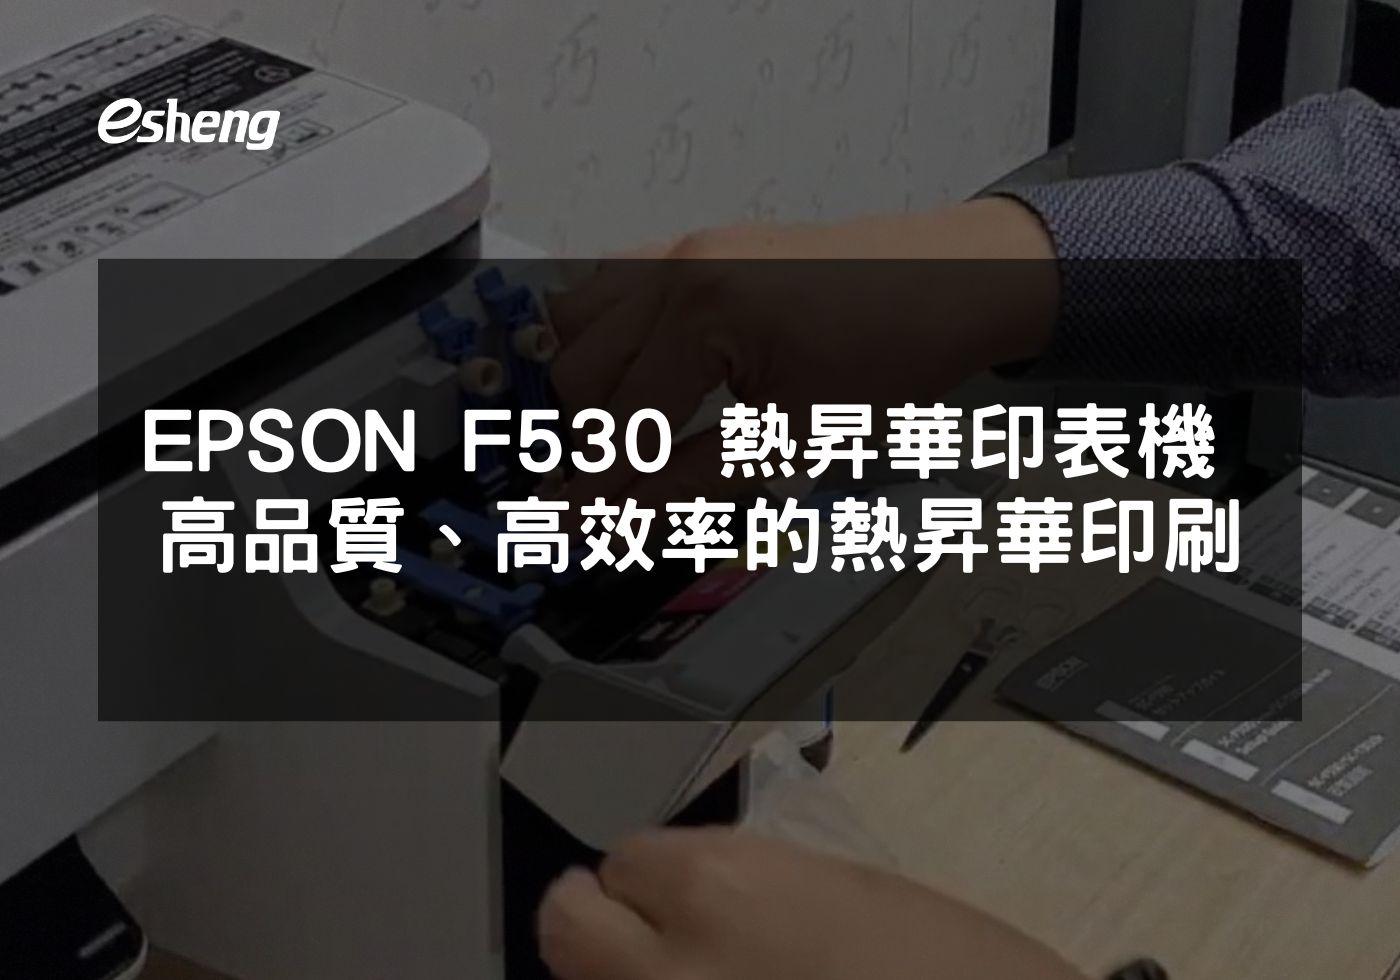 高效能與高品質結合 EPSON F530熱昇華印表機全方位解析